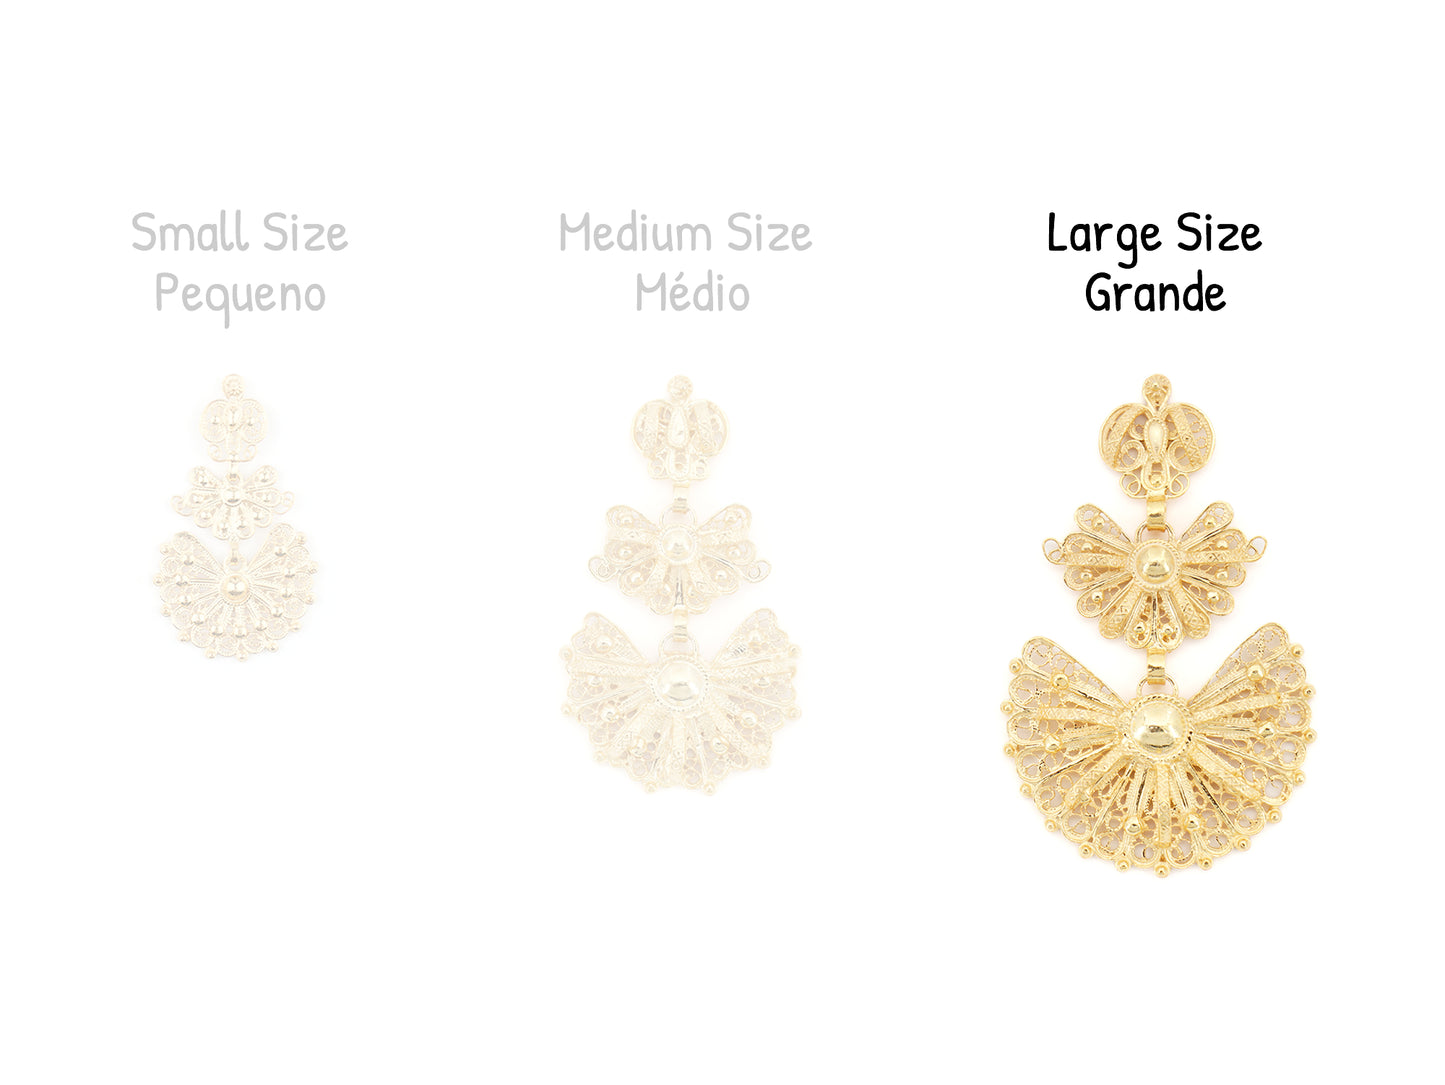 Brincos Laças Grandes, Filigrana Portuguesa, Prata de Lei 925 Dourada - Comparação tamanho